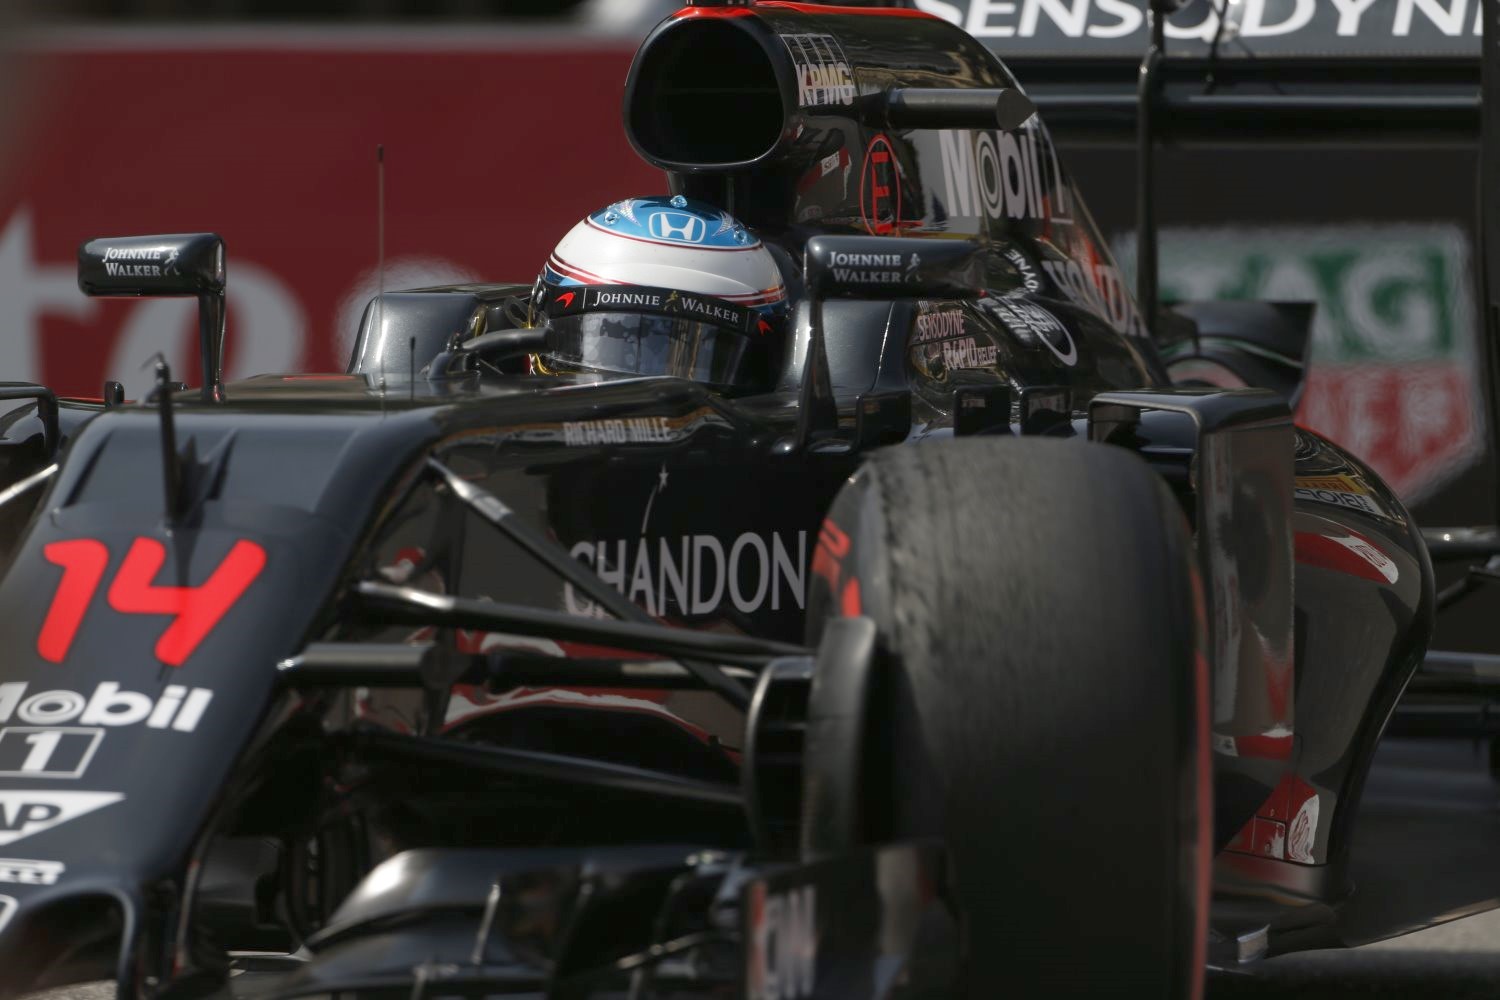 McLaren gets more potent fuel in Montreal